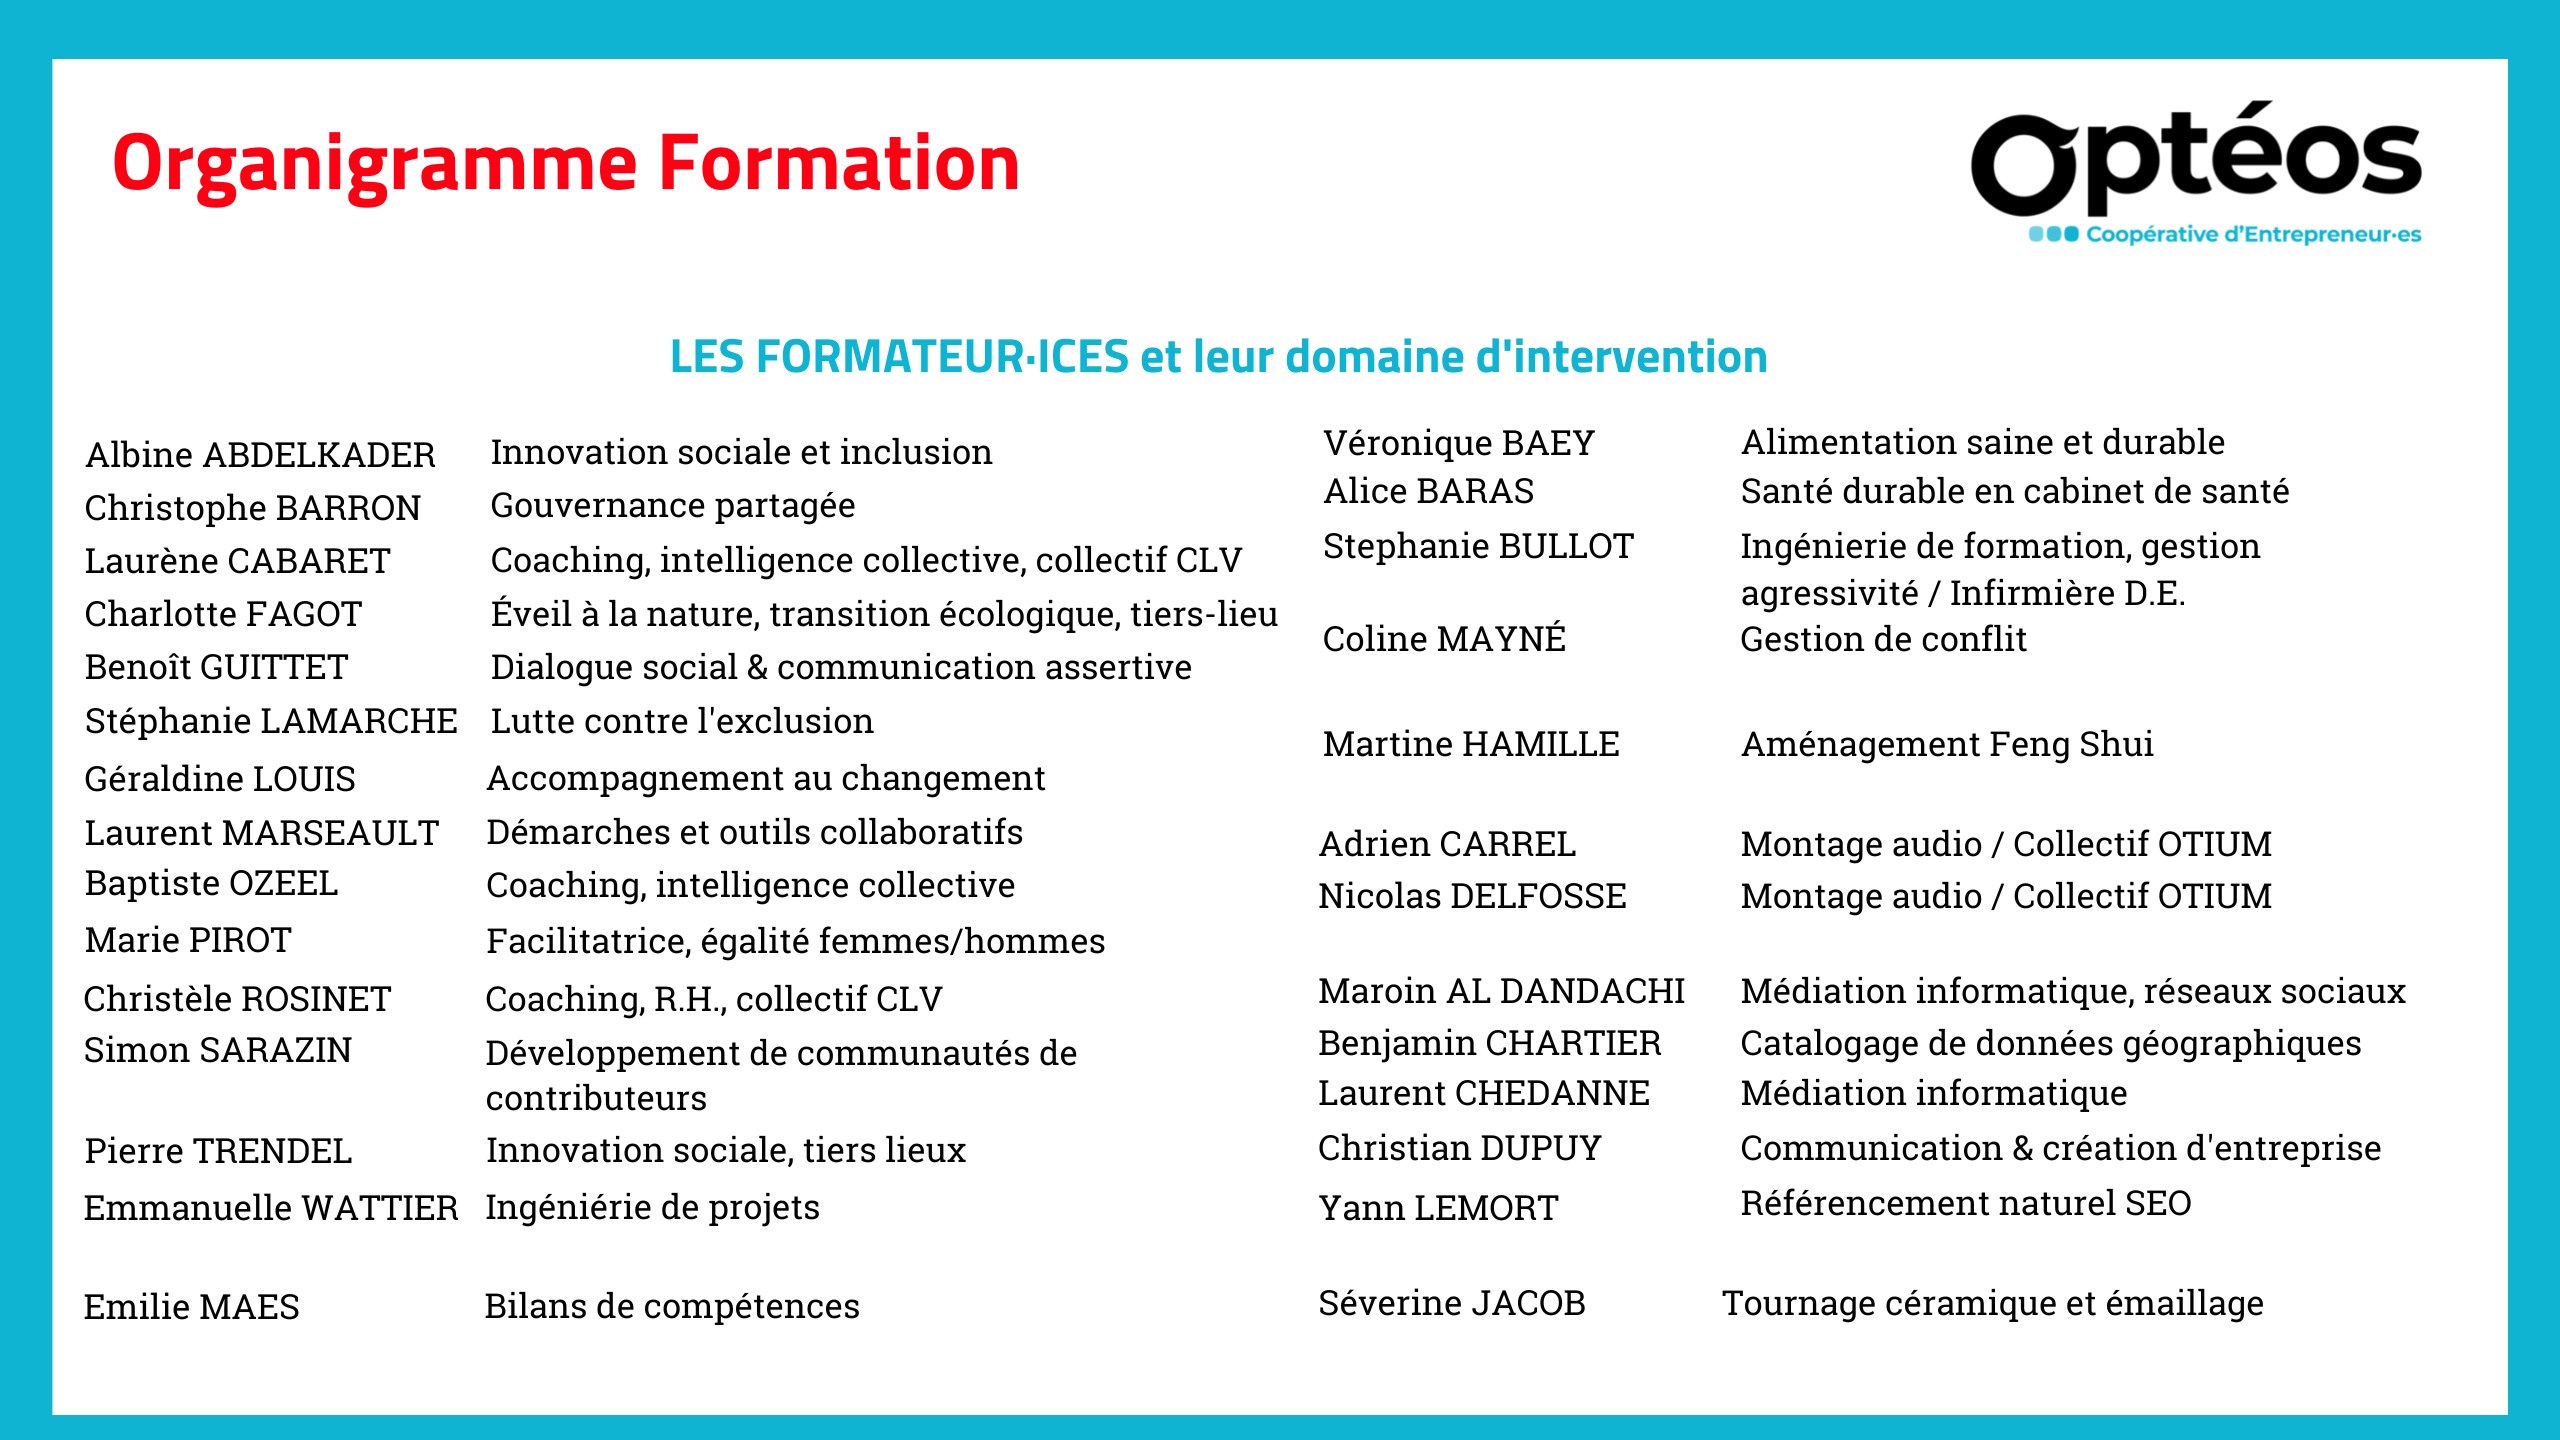 Les formateur·ices et leur domaine d'intervention, organigramme Formation, Optéos